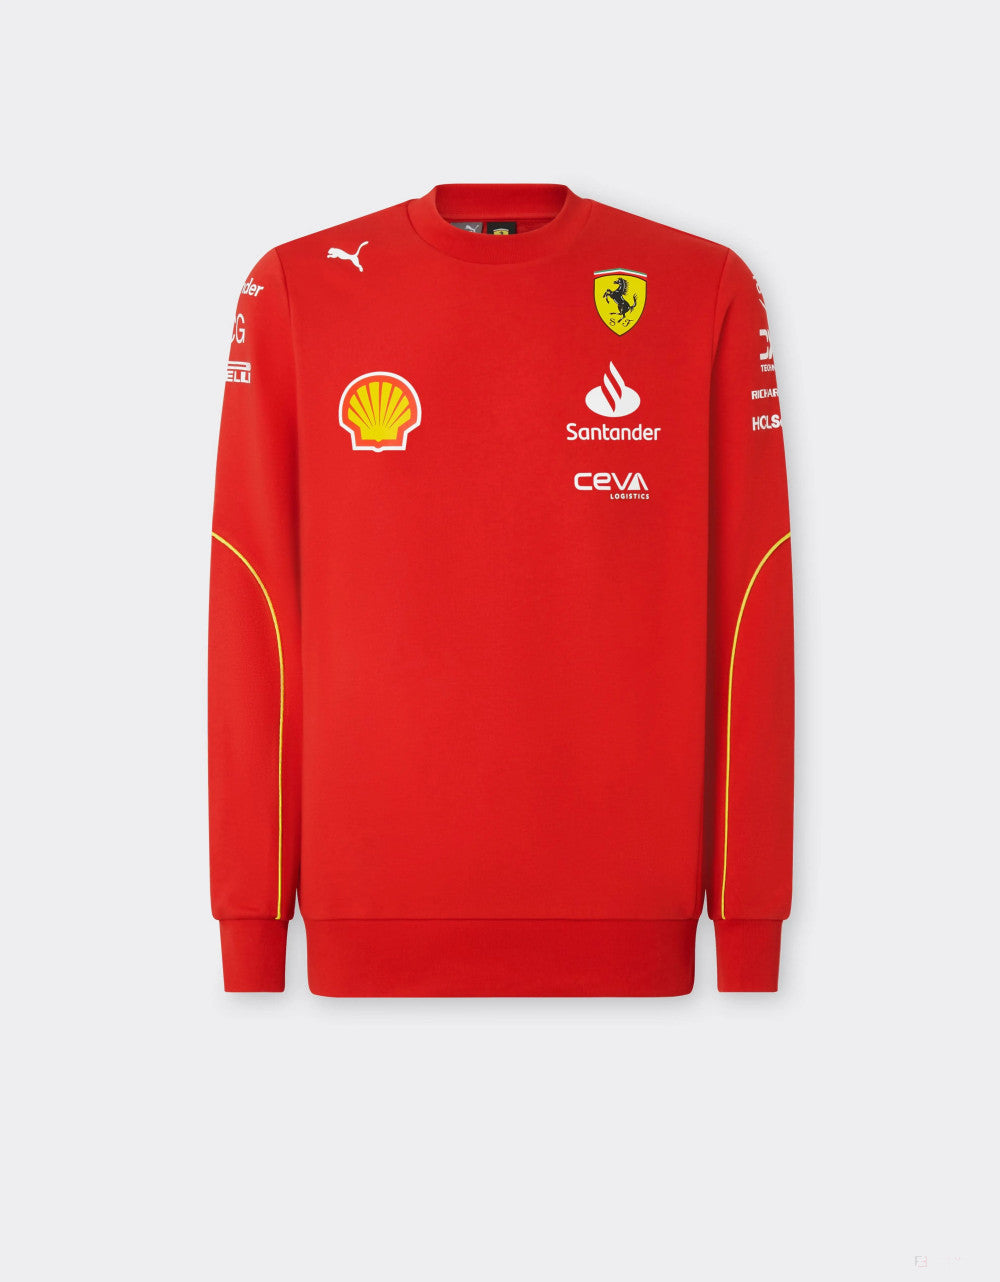 Ferrari pulover, Puma, echipa, guler rotund, rosu, 2024